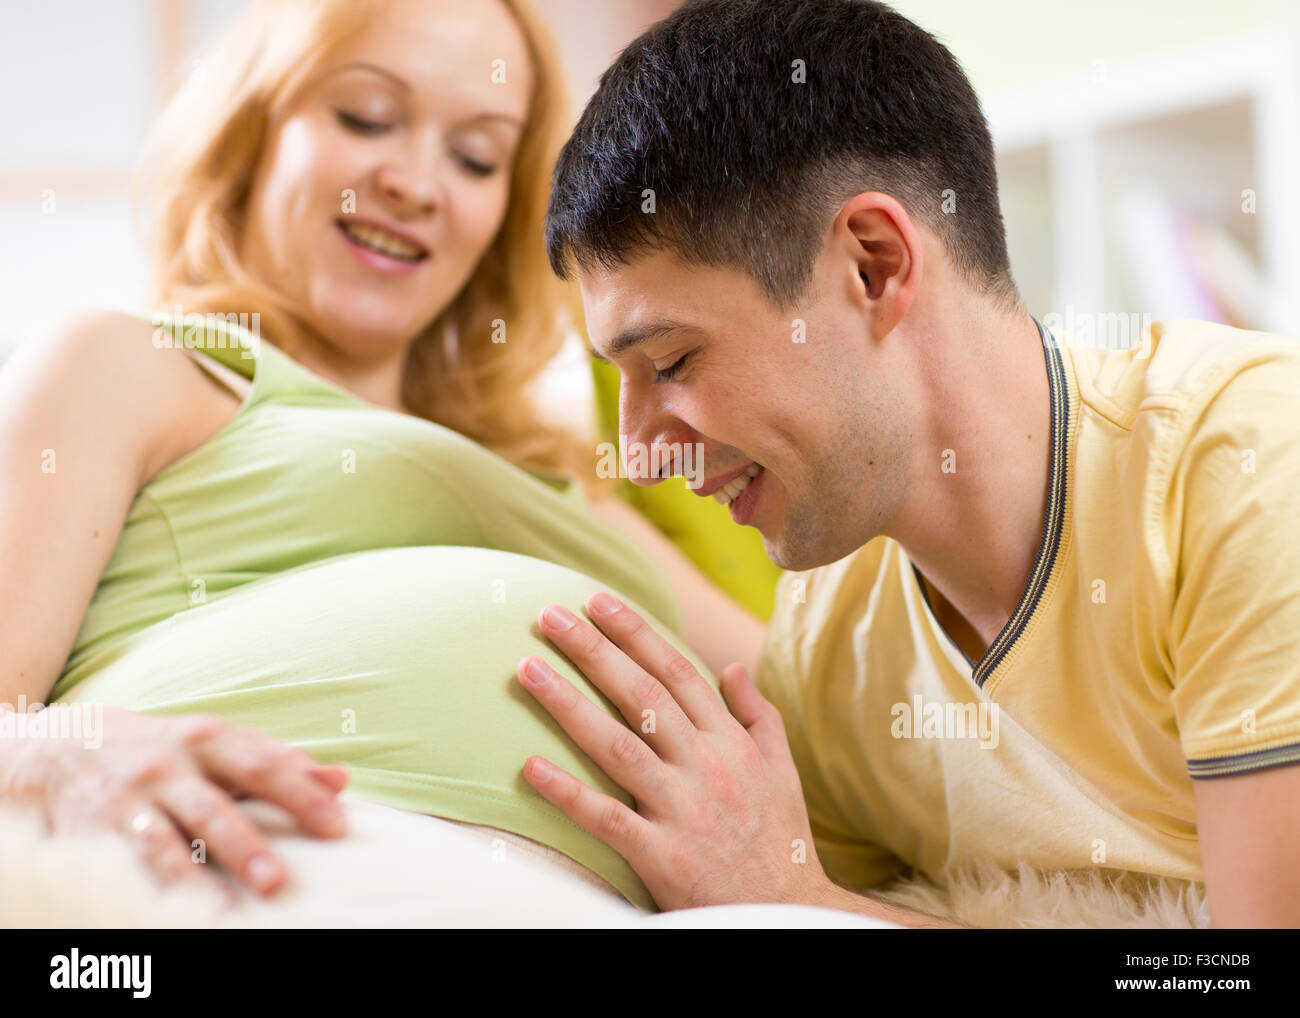 Les traits de son ventre homme femme enceinte. Un mari aime sa femme enceinte. Banque D'Images